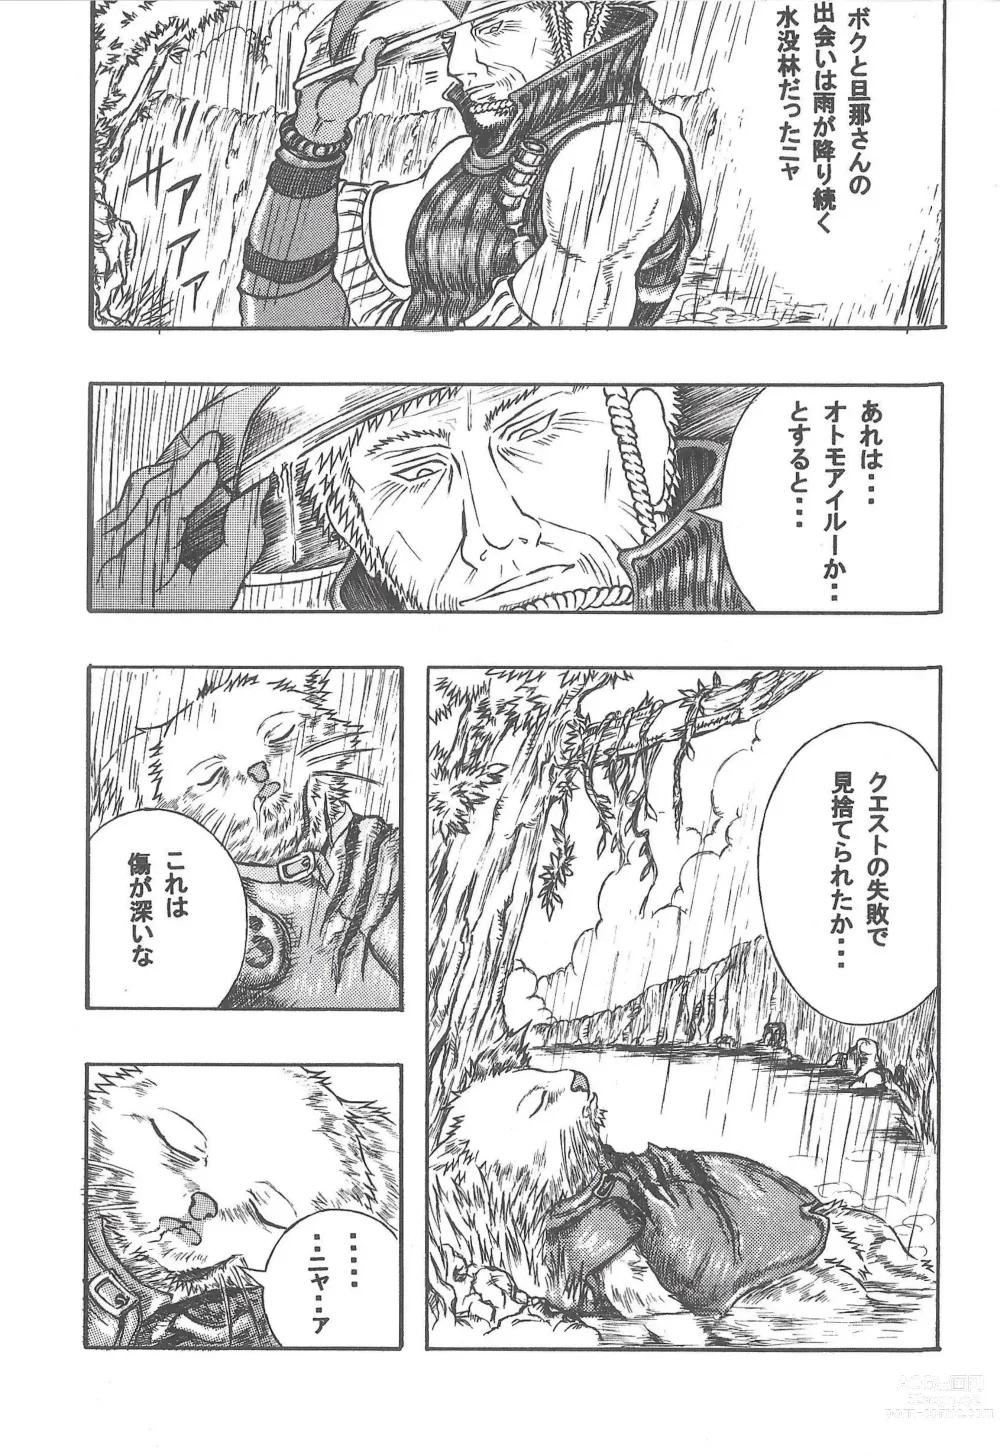 Page 5 of doujinshi Airu Monhun Dream